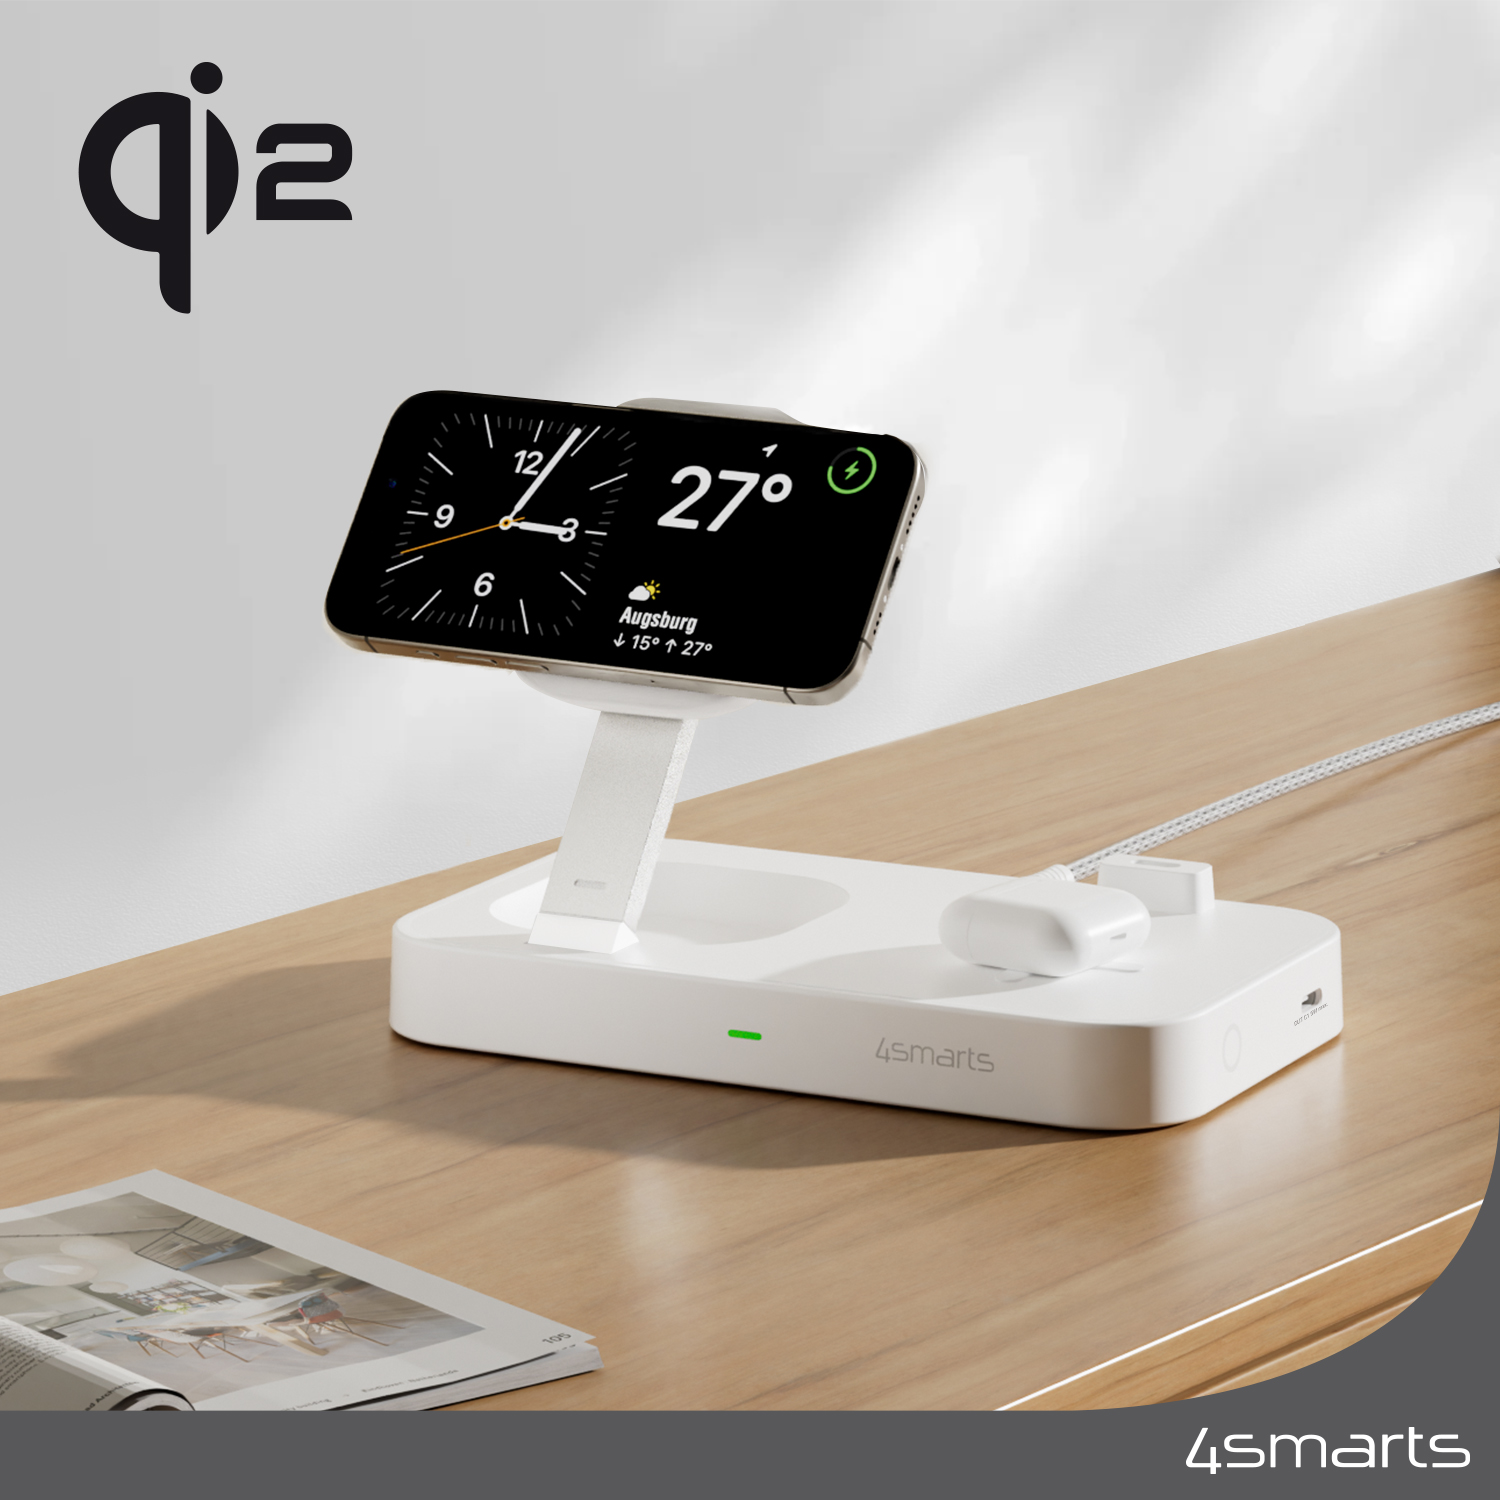 Die 3-in-1 4smarts Qi2 Trident Ladestation macht überall eine gute Figur - im Büro, in der Küche oder im Wohnzimmer.